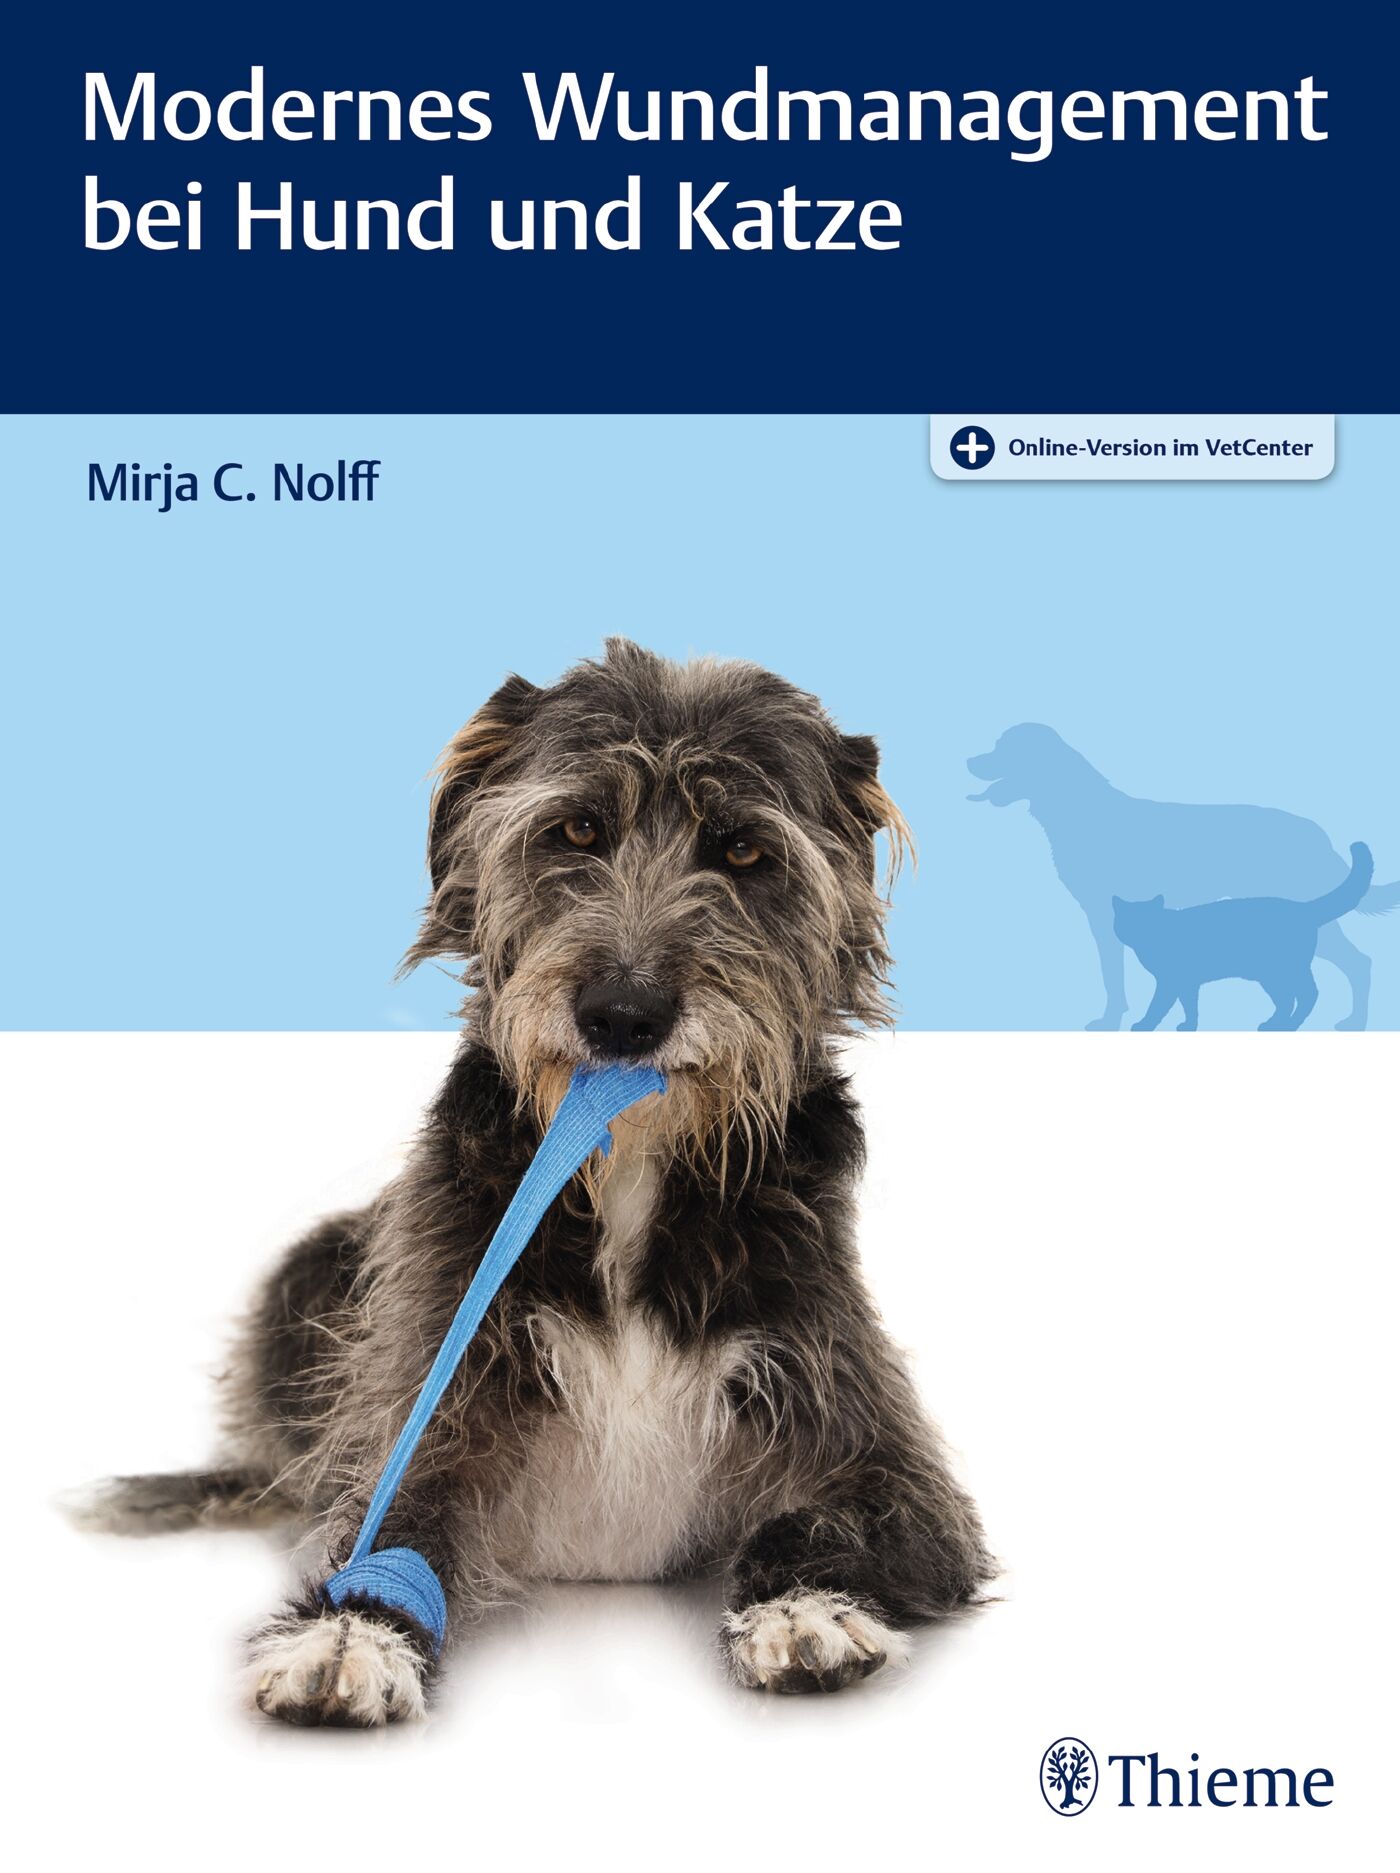 Modernes Wundmanagement bei Hund und Katze, 9783132427174